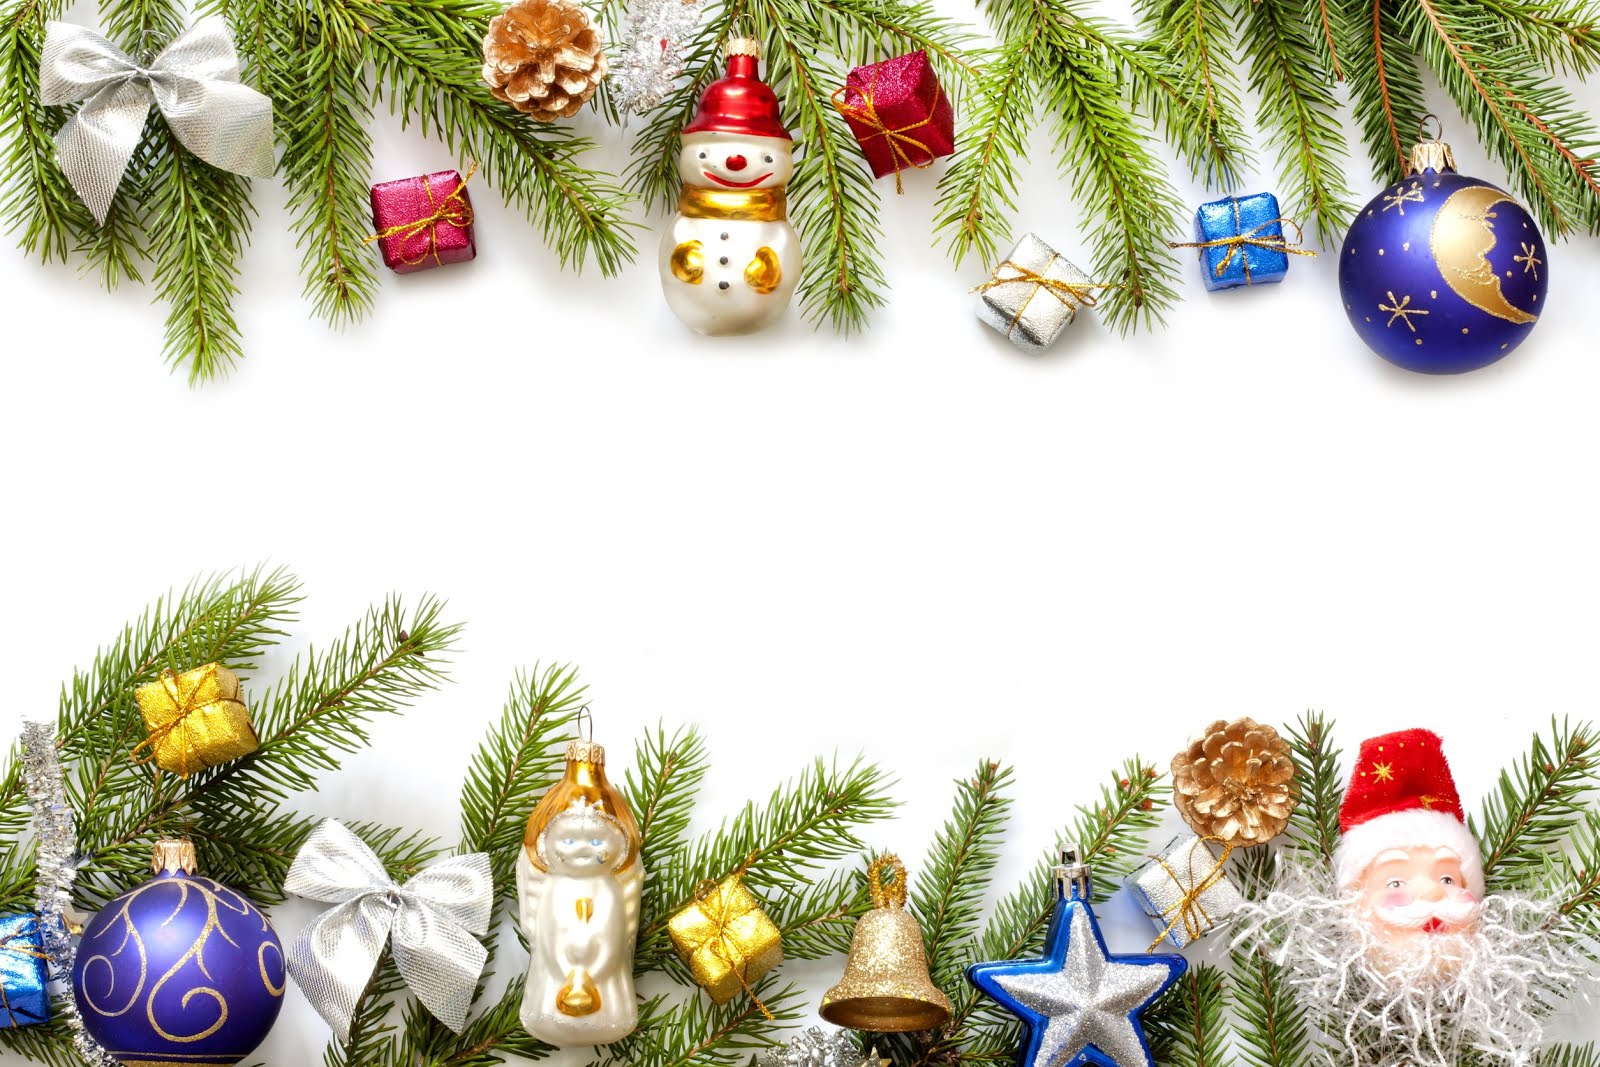 Banco de Imágenes Gratis: Marco con adornos navideños para escribir nombres  o mensajes personalizados en esta Navidad